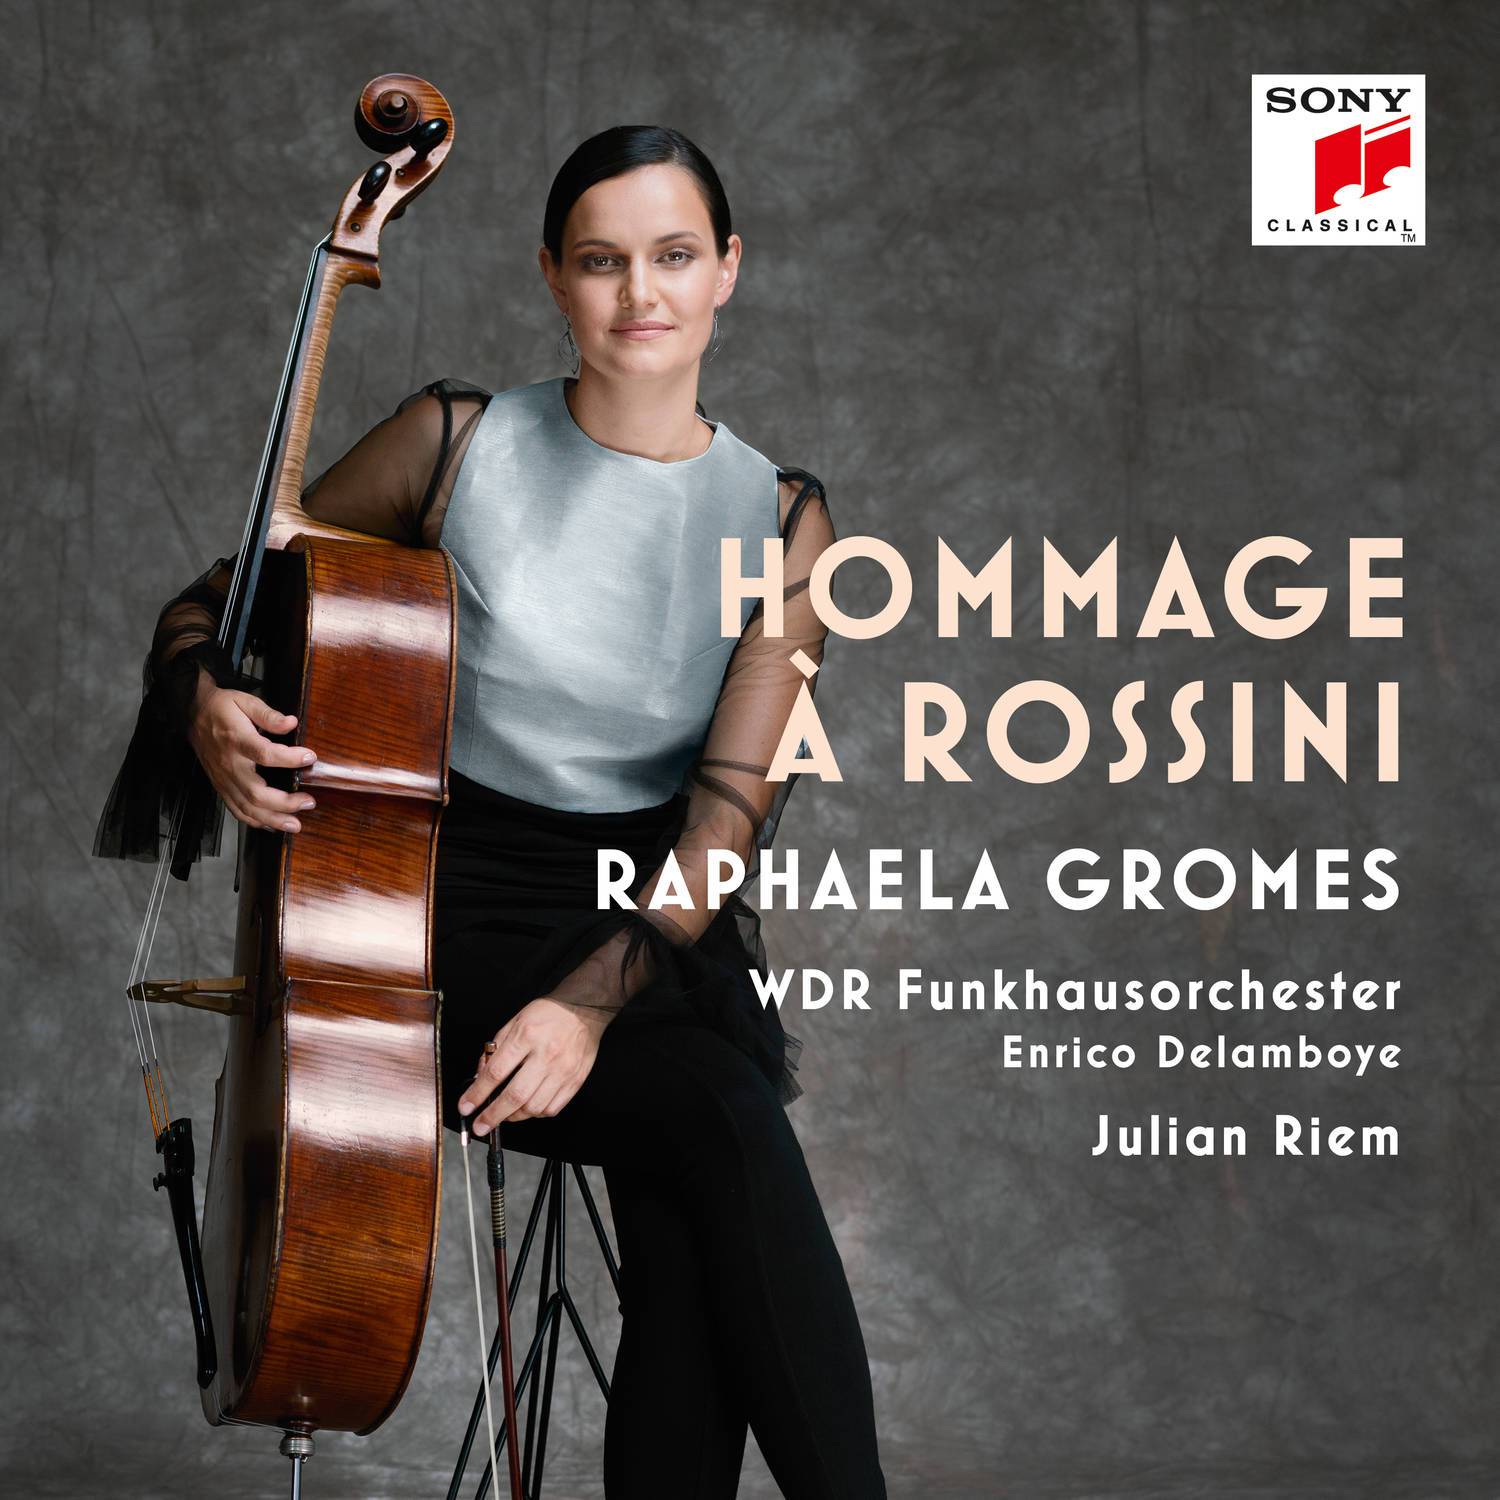 Hommage à Rossini, Fantaisie pour violoncelle et orchestra